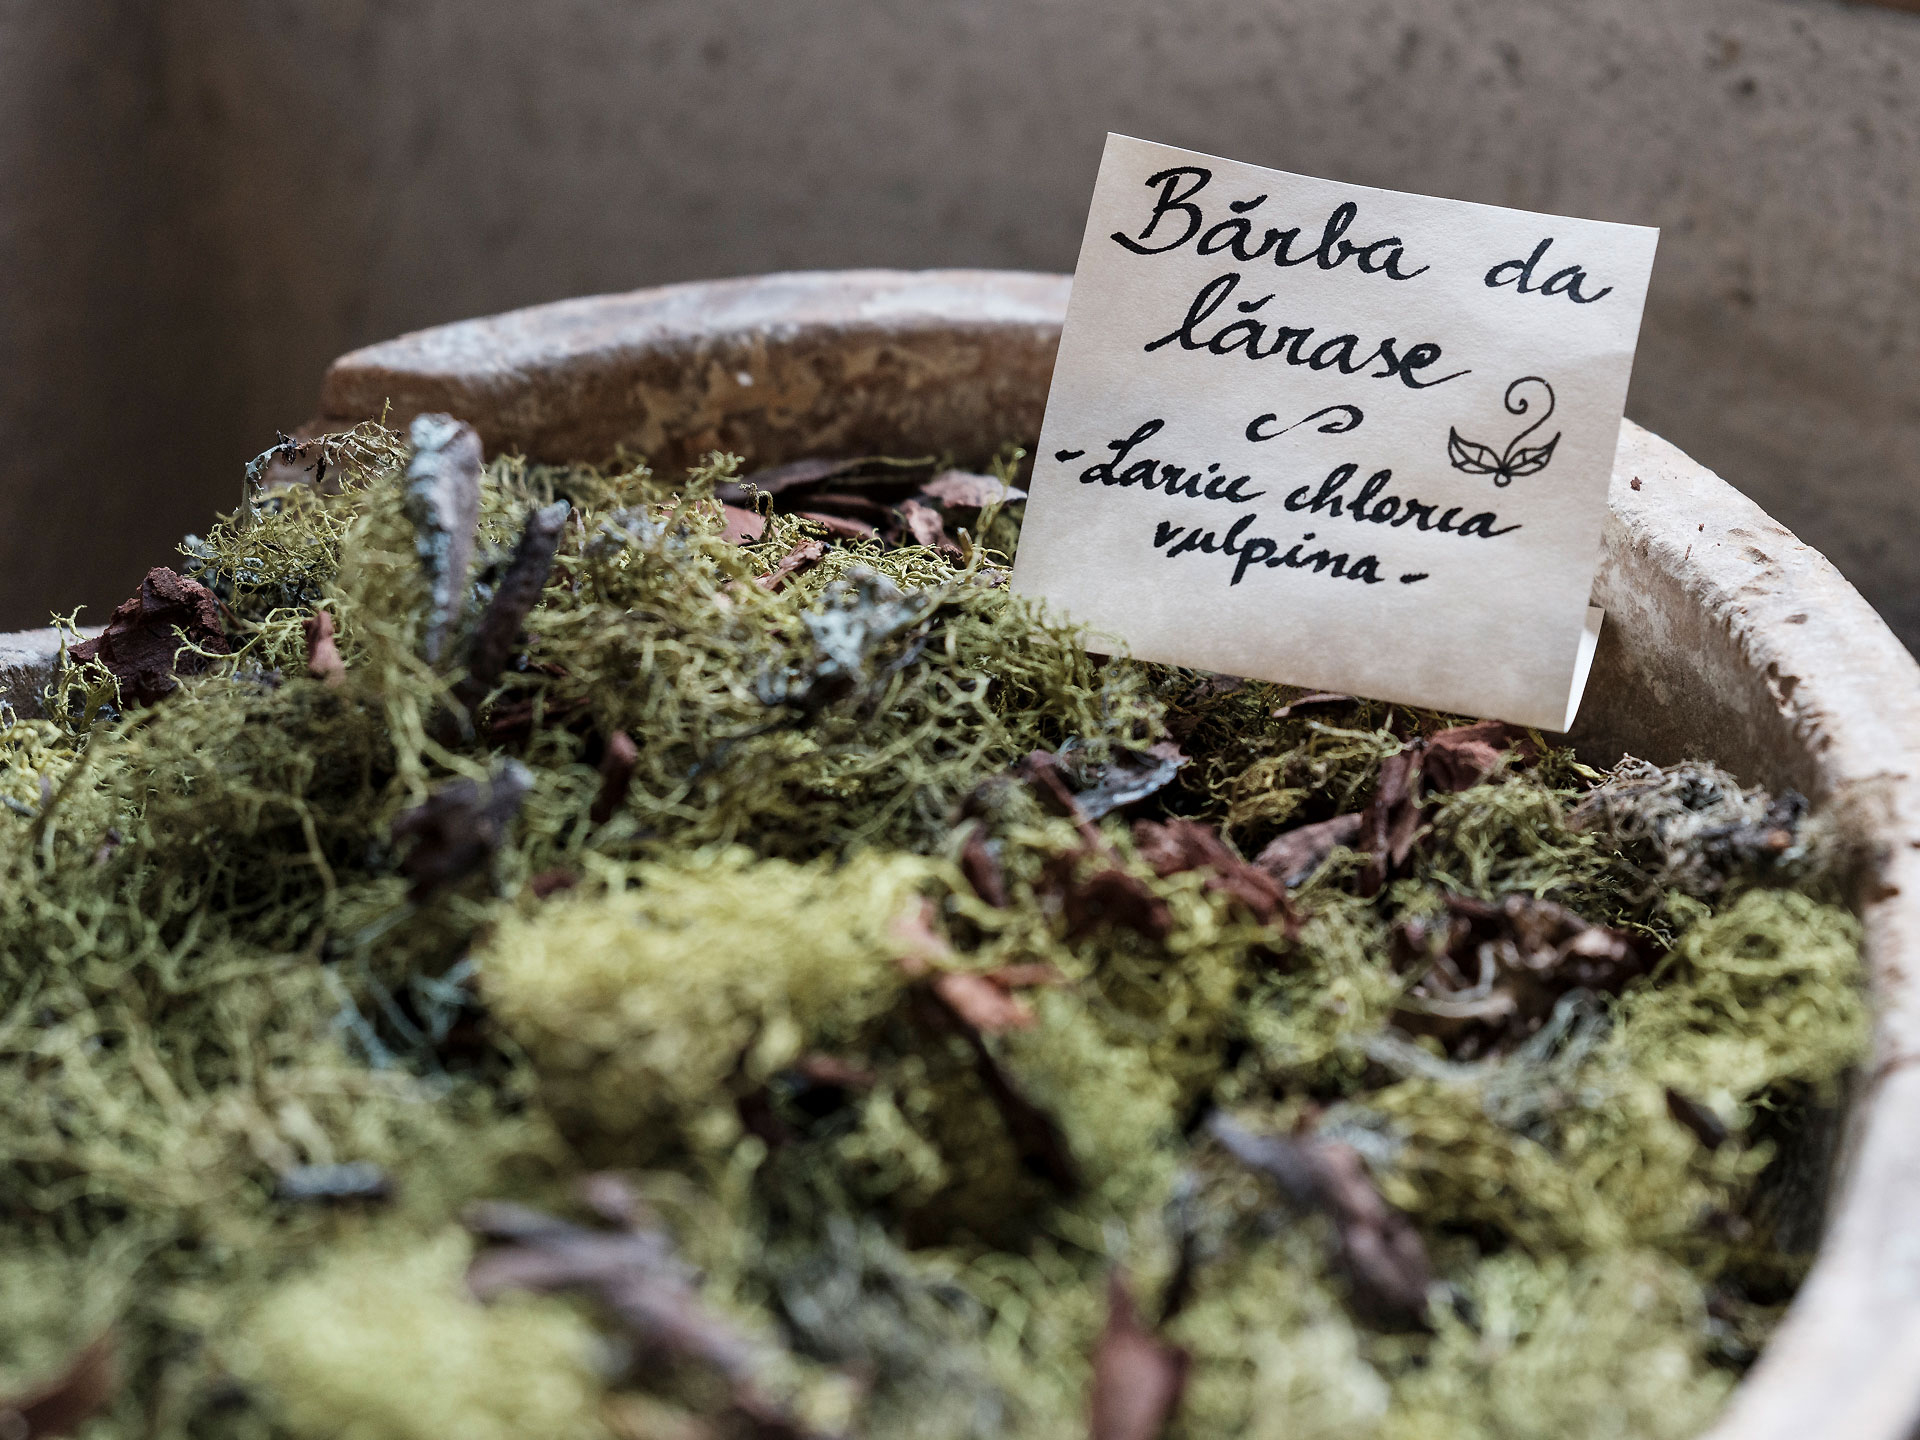 Dettaglio della ciotola contenente la "barba da larasch", il lichene che cresce sui rami dei larici, un tempo usato per tingere la lana.